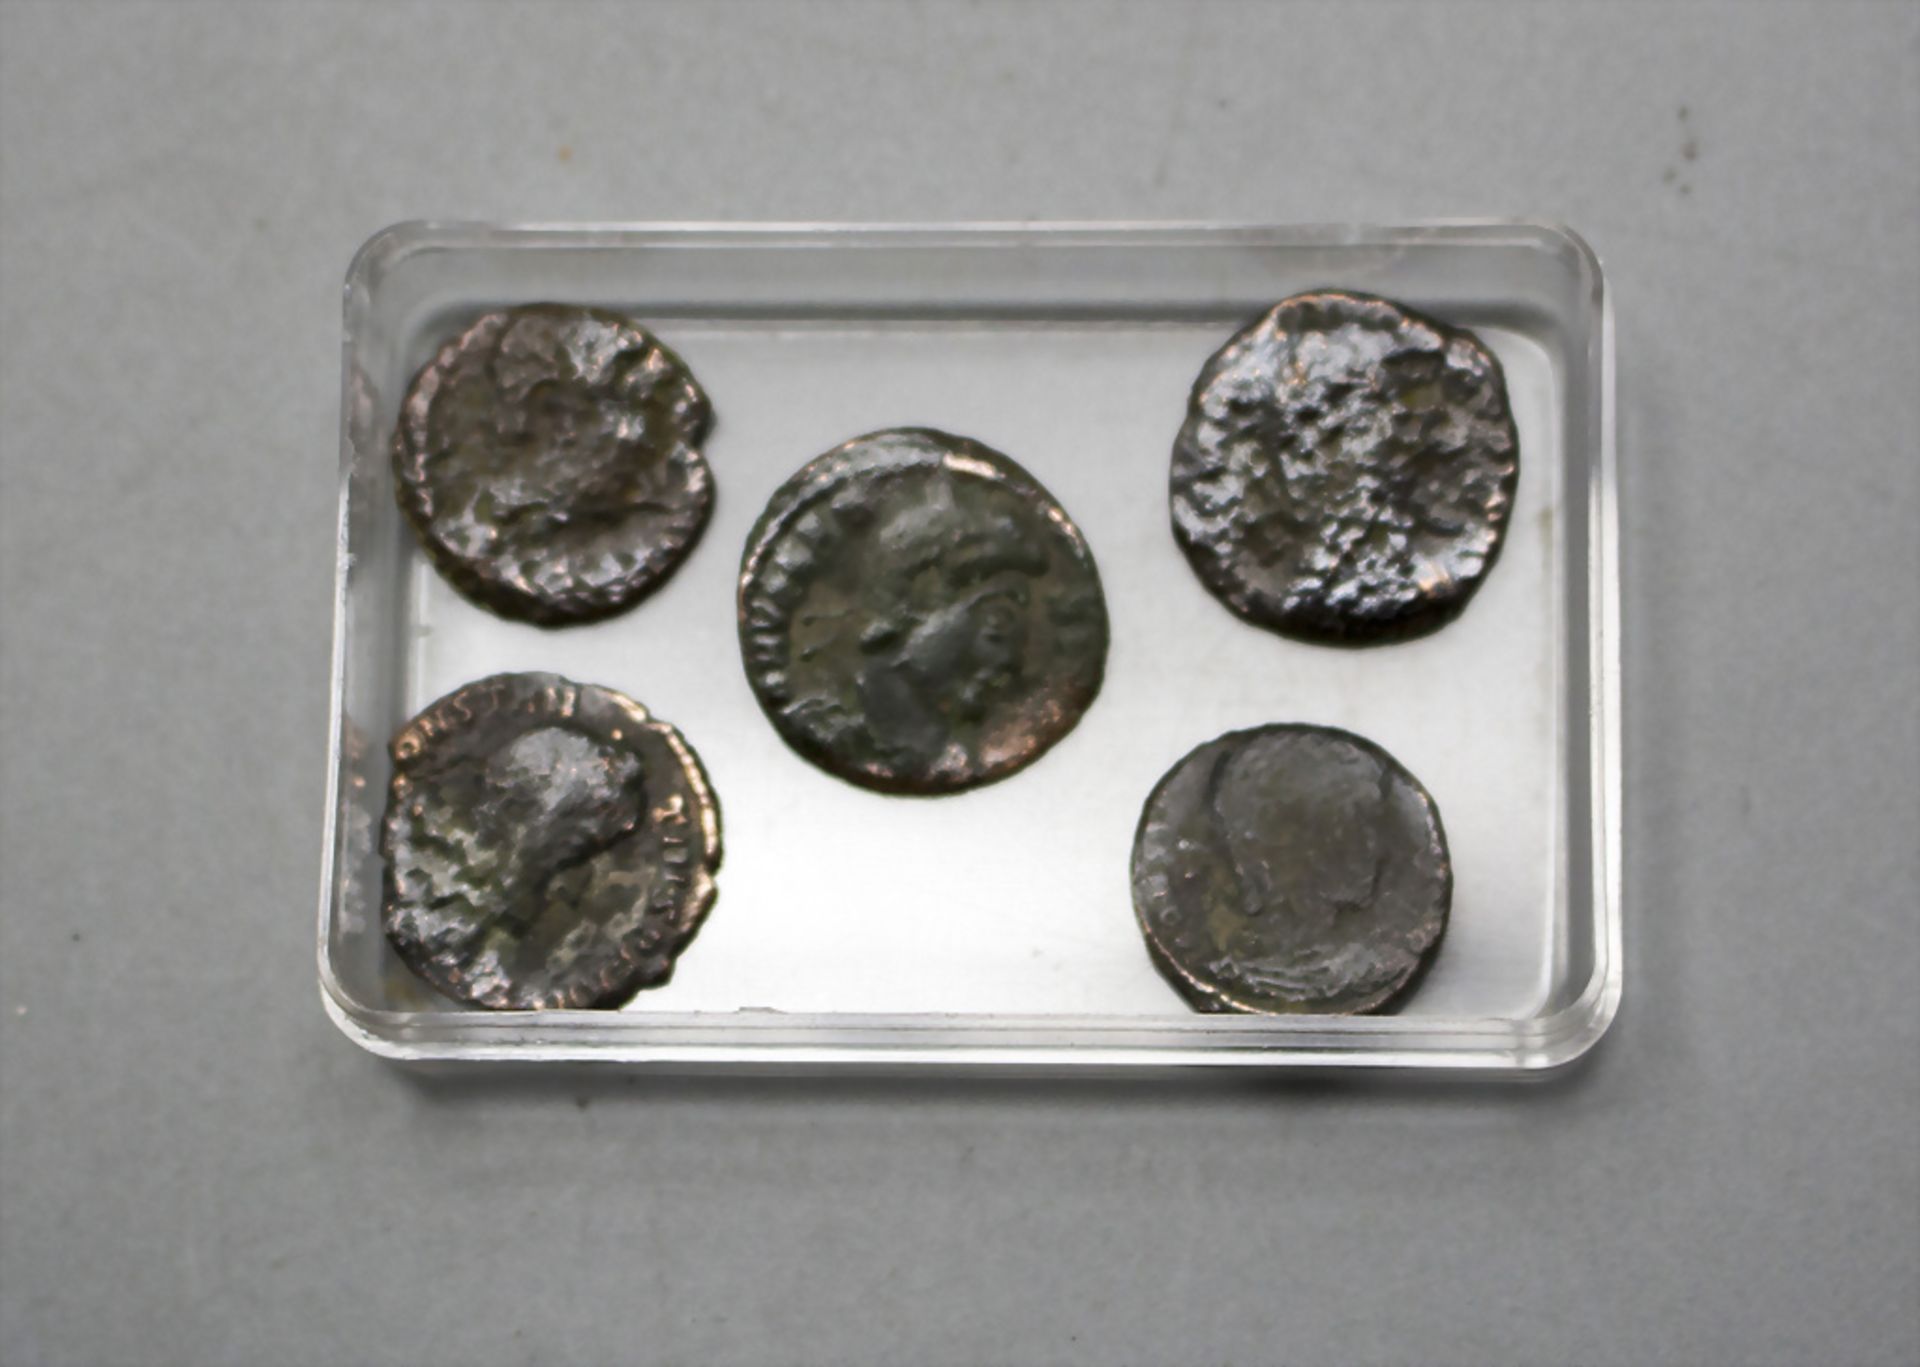 Konvolut aus 5 römischen Münzen / A set of 5 Roman coins